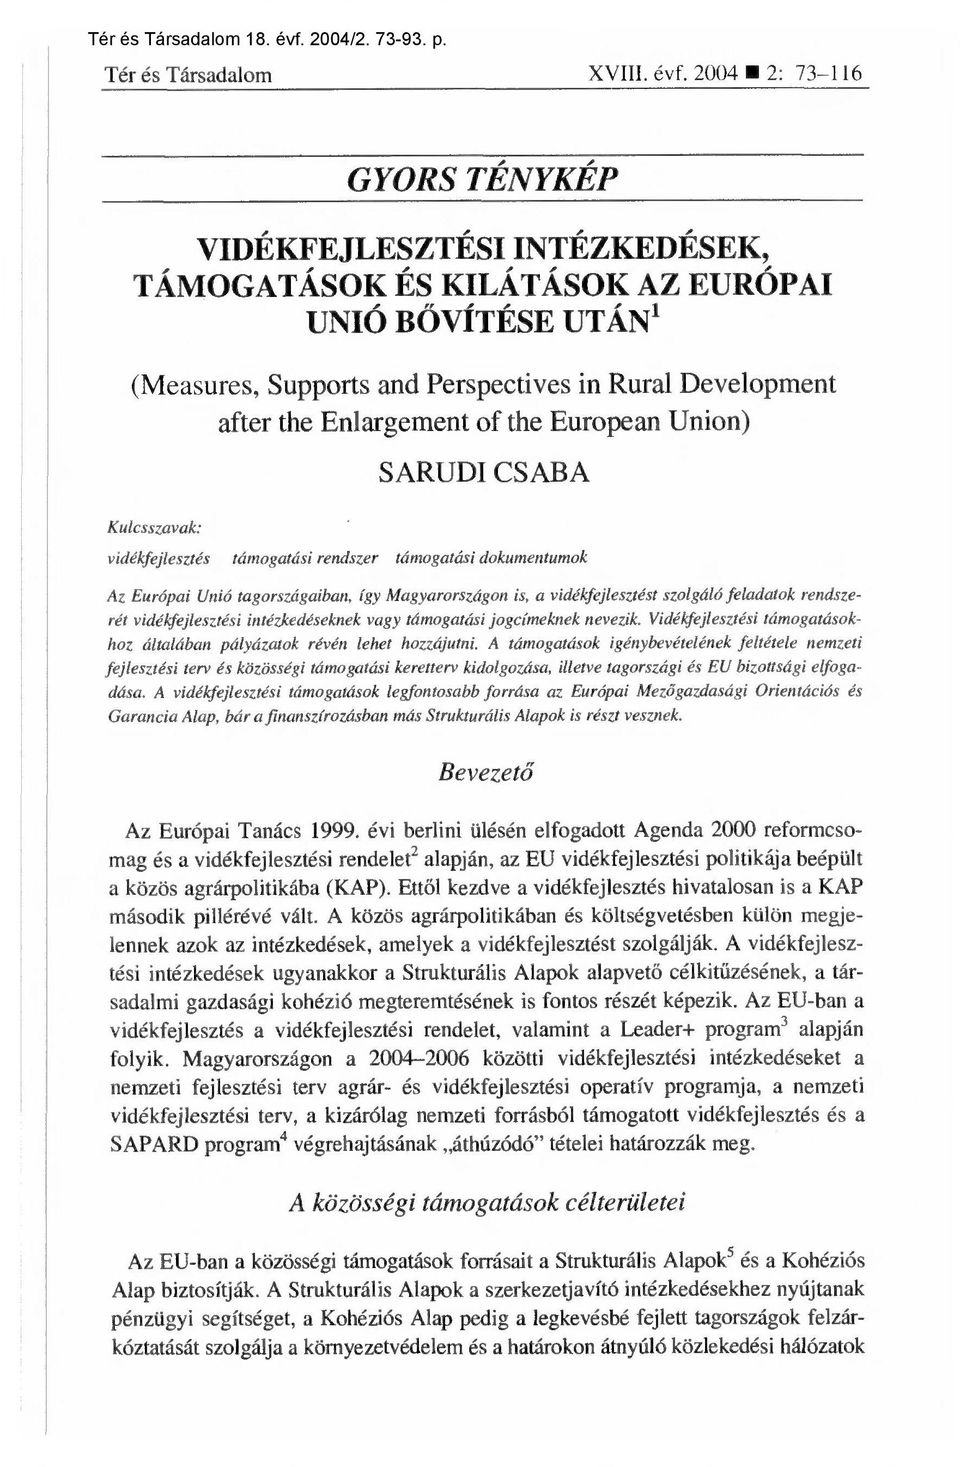 the European Union) Kulcsszavak: S ARUDI CSABA vidékfejlesztés támogatási rendszer támogatási dokumentumok Az Európai Unió tagországaiban, így Magyarországon is, a vidékfejlesztést szolgáló feladatok